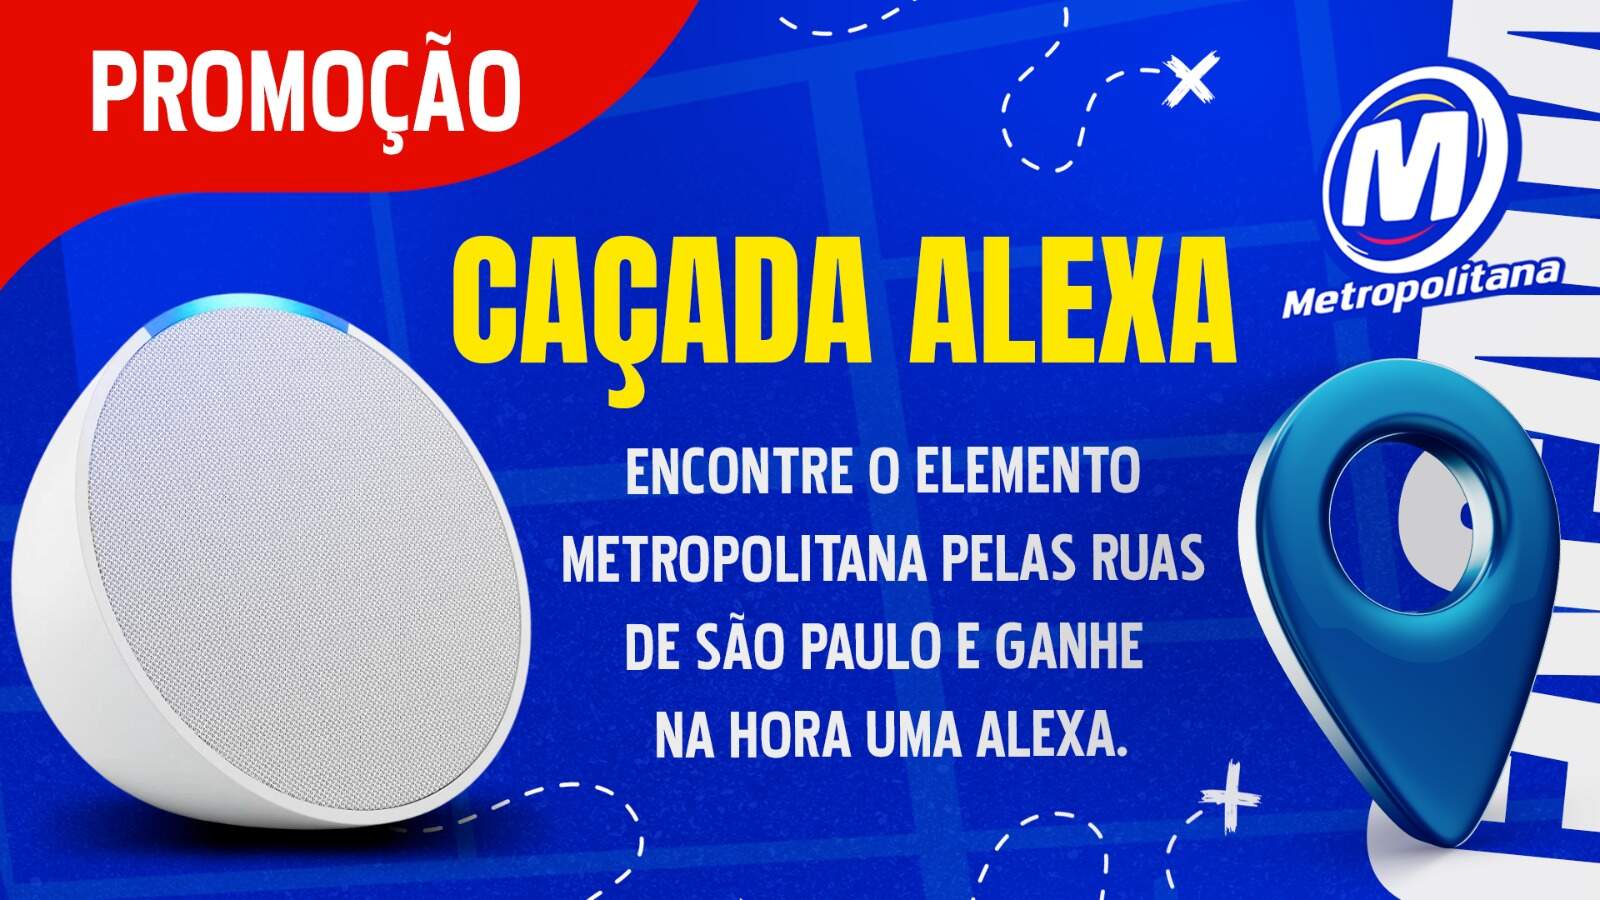 [ENCERRADA] Promoção: CAÇADA ALEXA NA METROPOLITANA